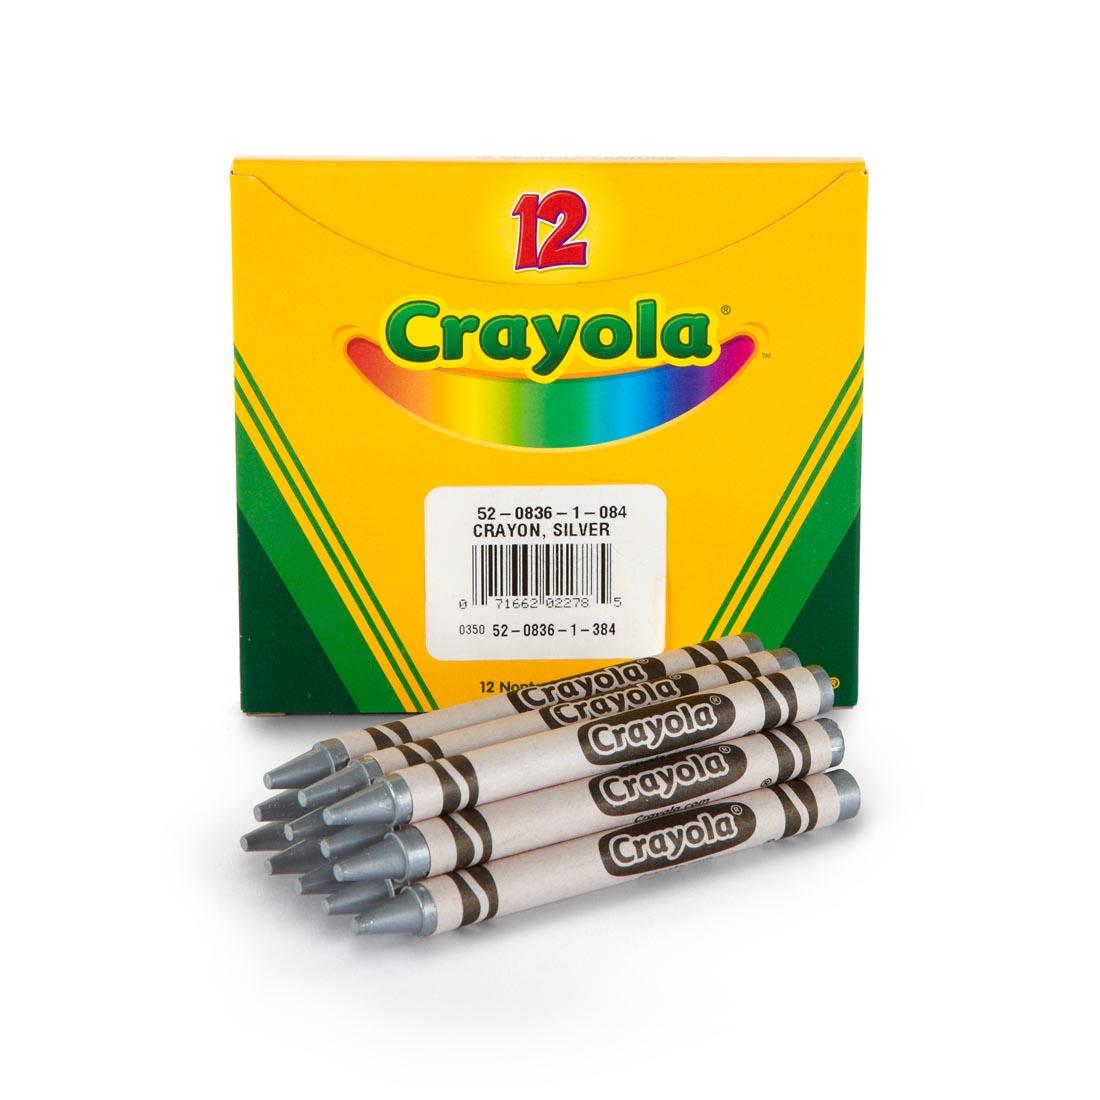 Box of Crayola Regular Crayon Refills with 12 Metallic Silver Crayons